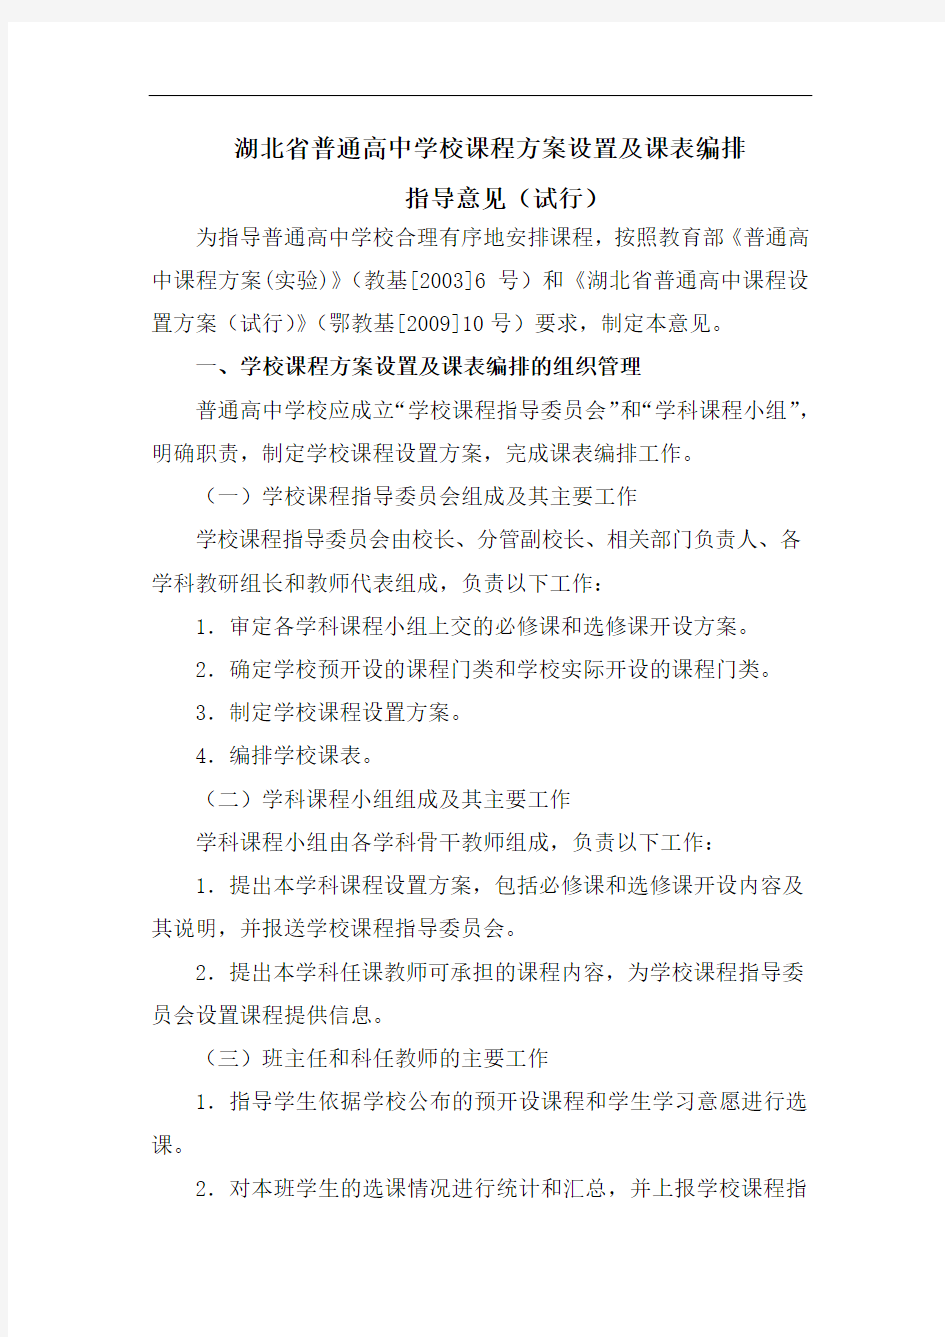 湖北省普通高中学校课程方案设置及课表编排指导意见(试行)